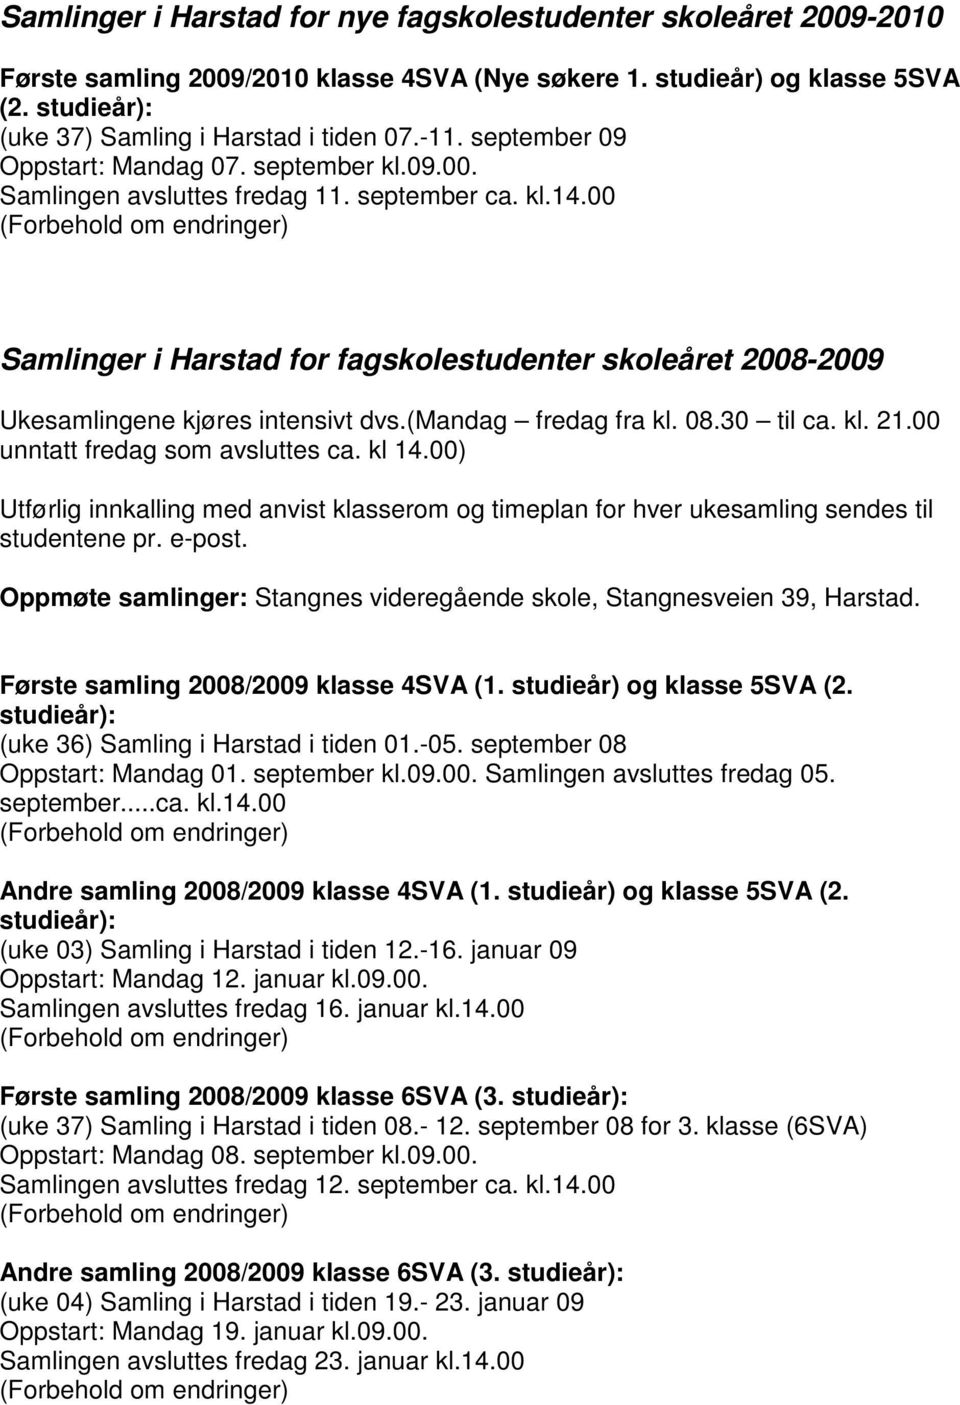 00 Samlinger i Harstad for fagskolestudenter skoleåret 2008-2009 Ukesamlingene kjøres intensivt dvs.(mandag fredag fra kl. 08.30 til ca. kl. 21.00 unntatt fredag som avsluttes ca. kl 14.